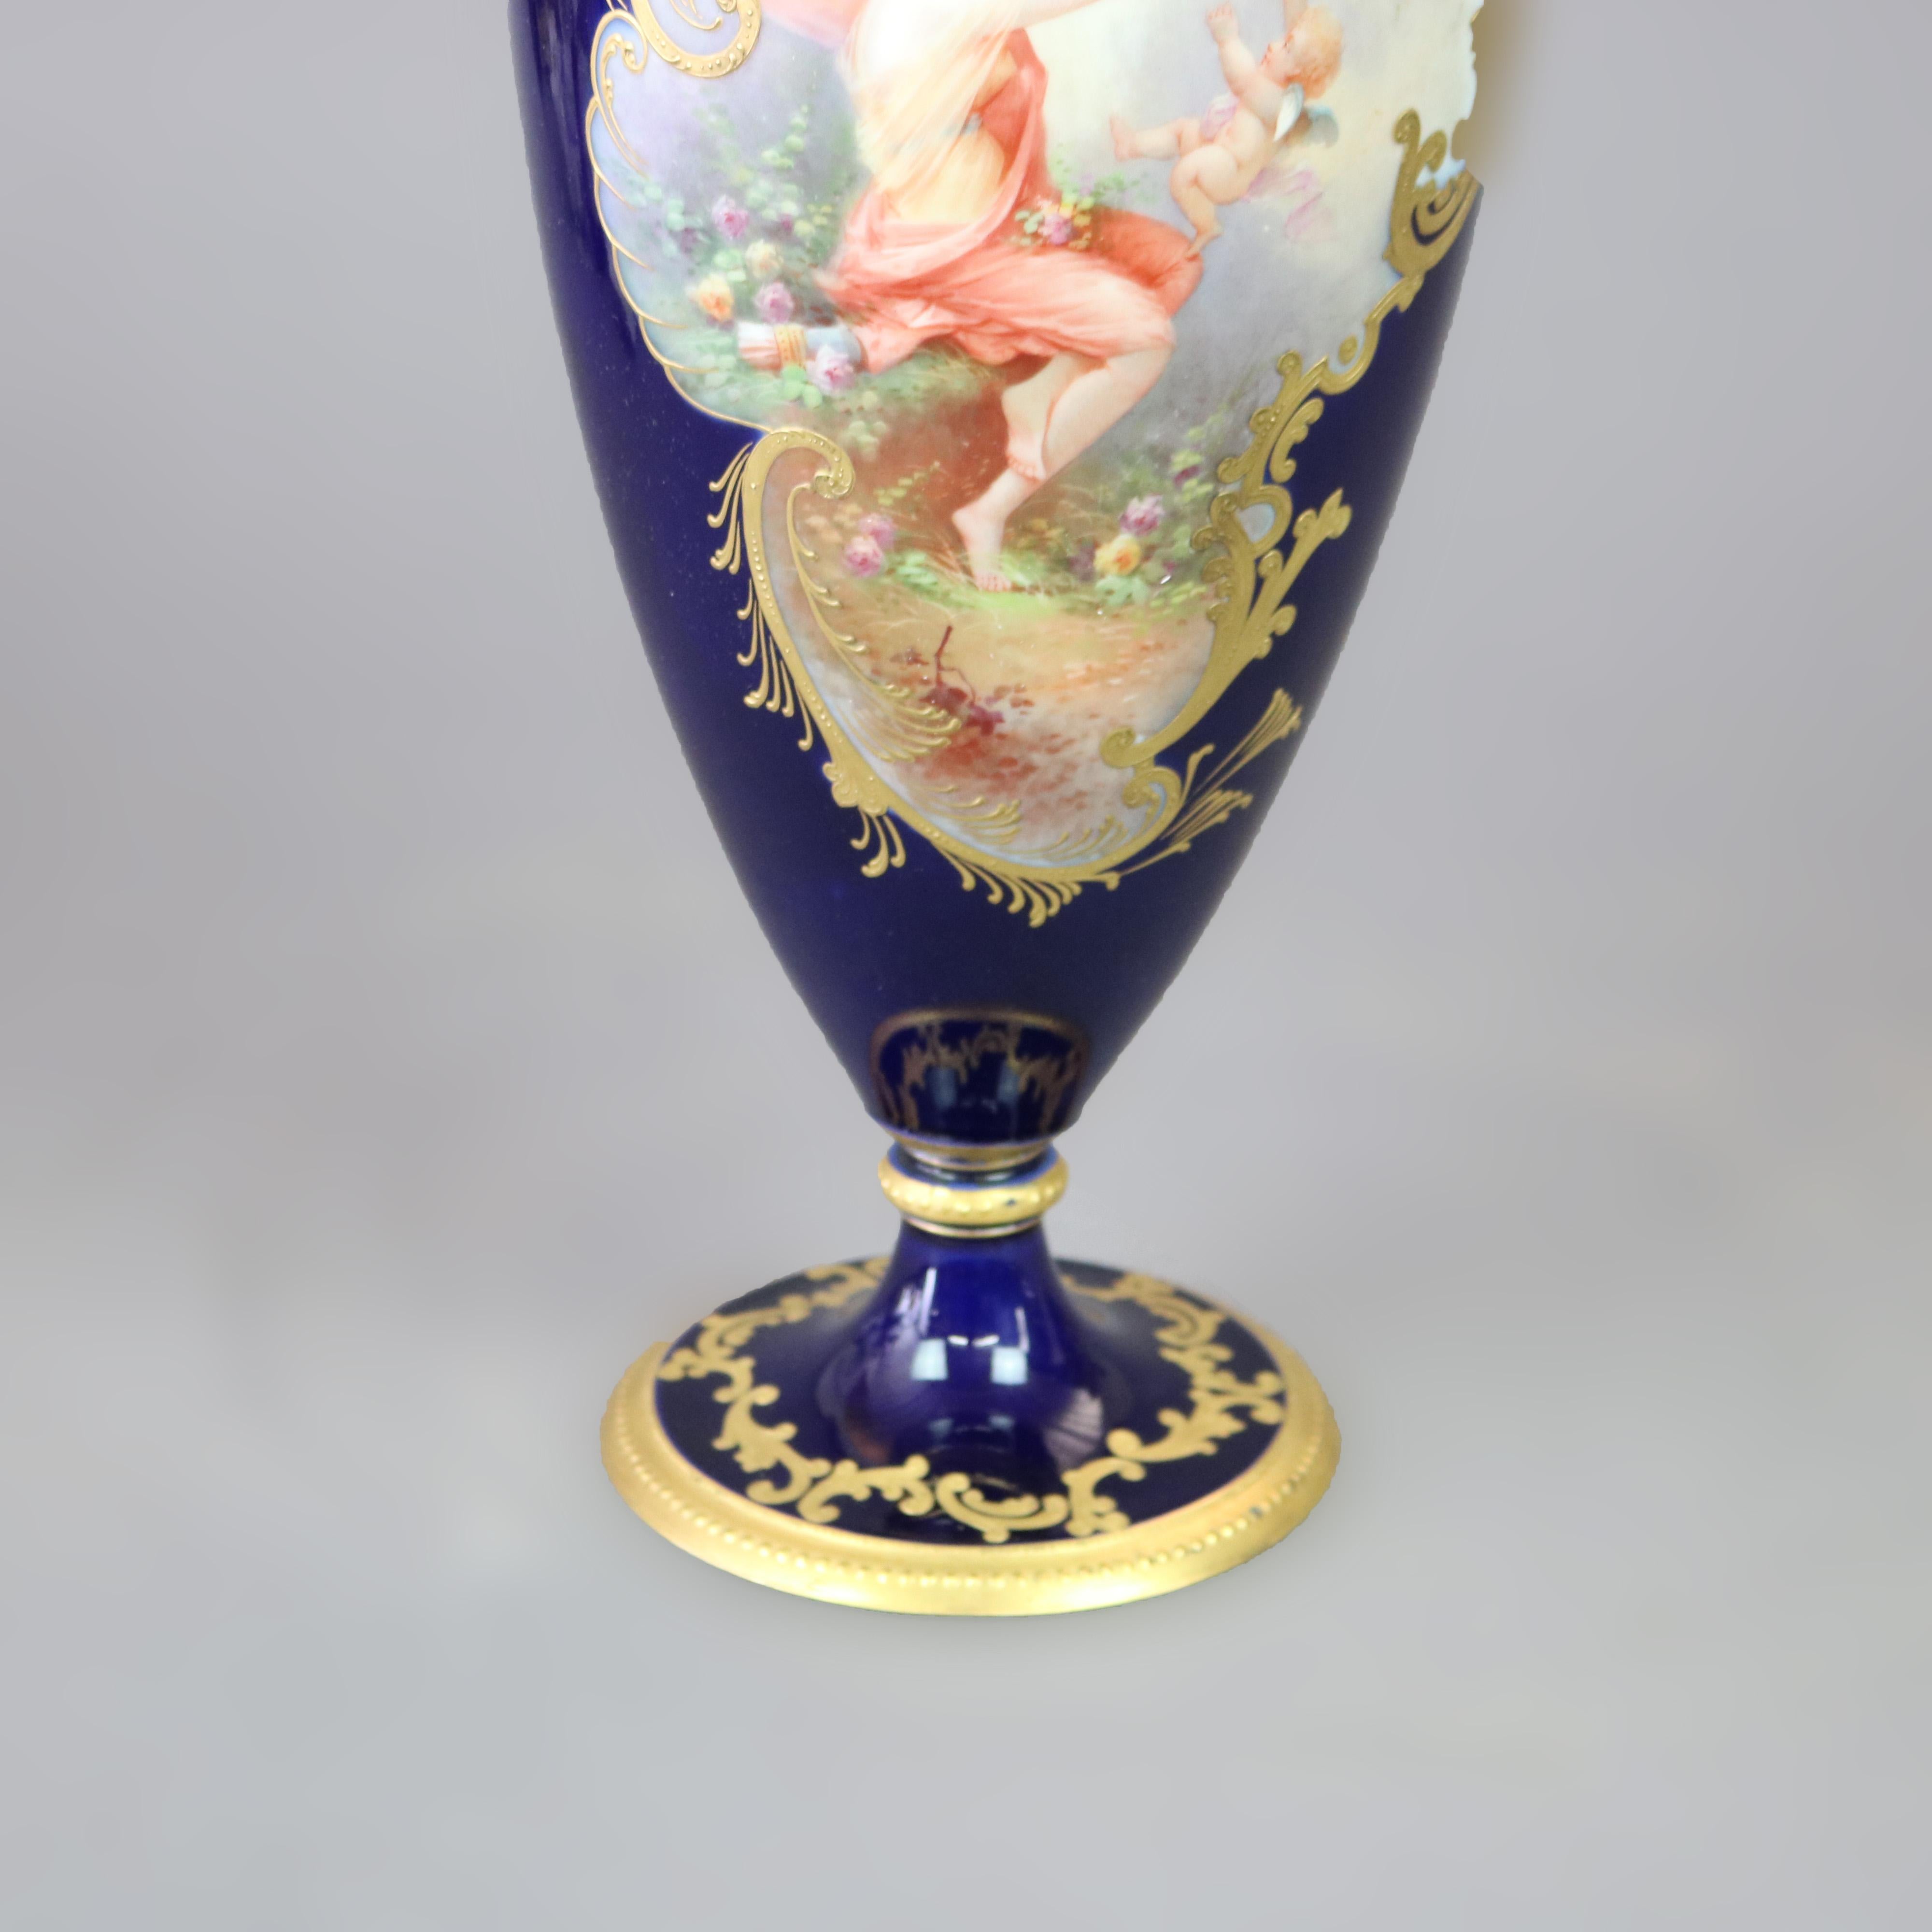 Oversized Antique Limoges Porcelain Hand Painted Allegorical Portrait Urn c1900 For Sale 1